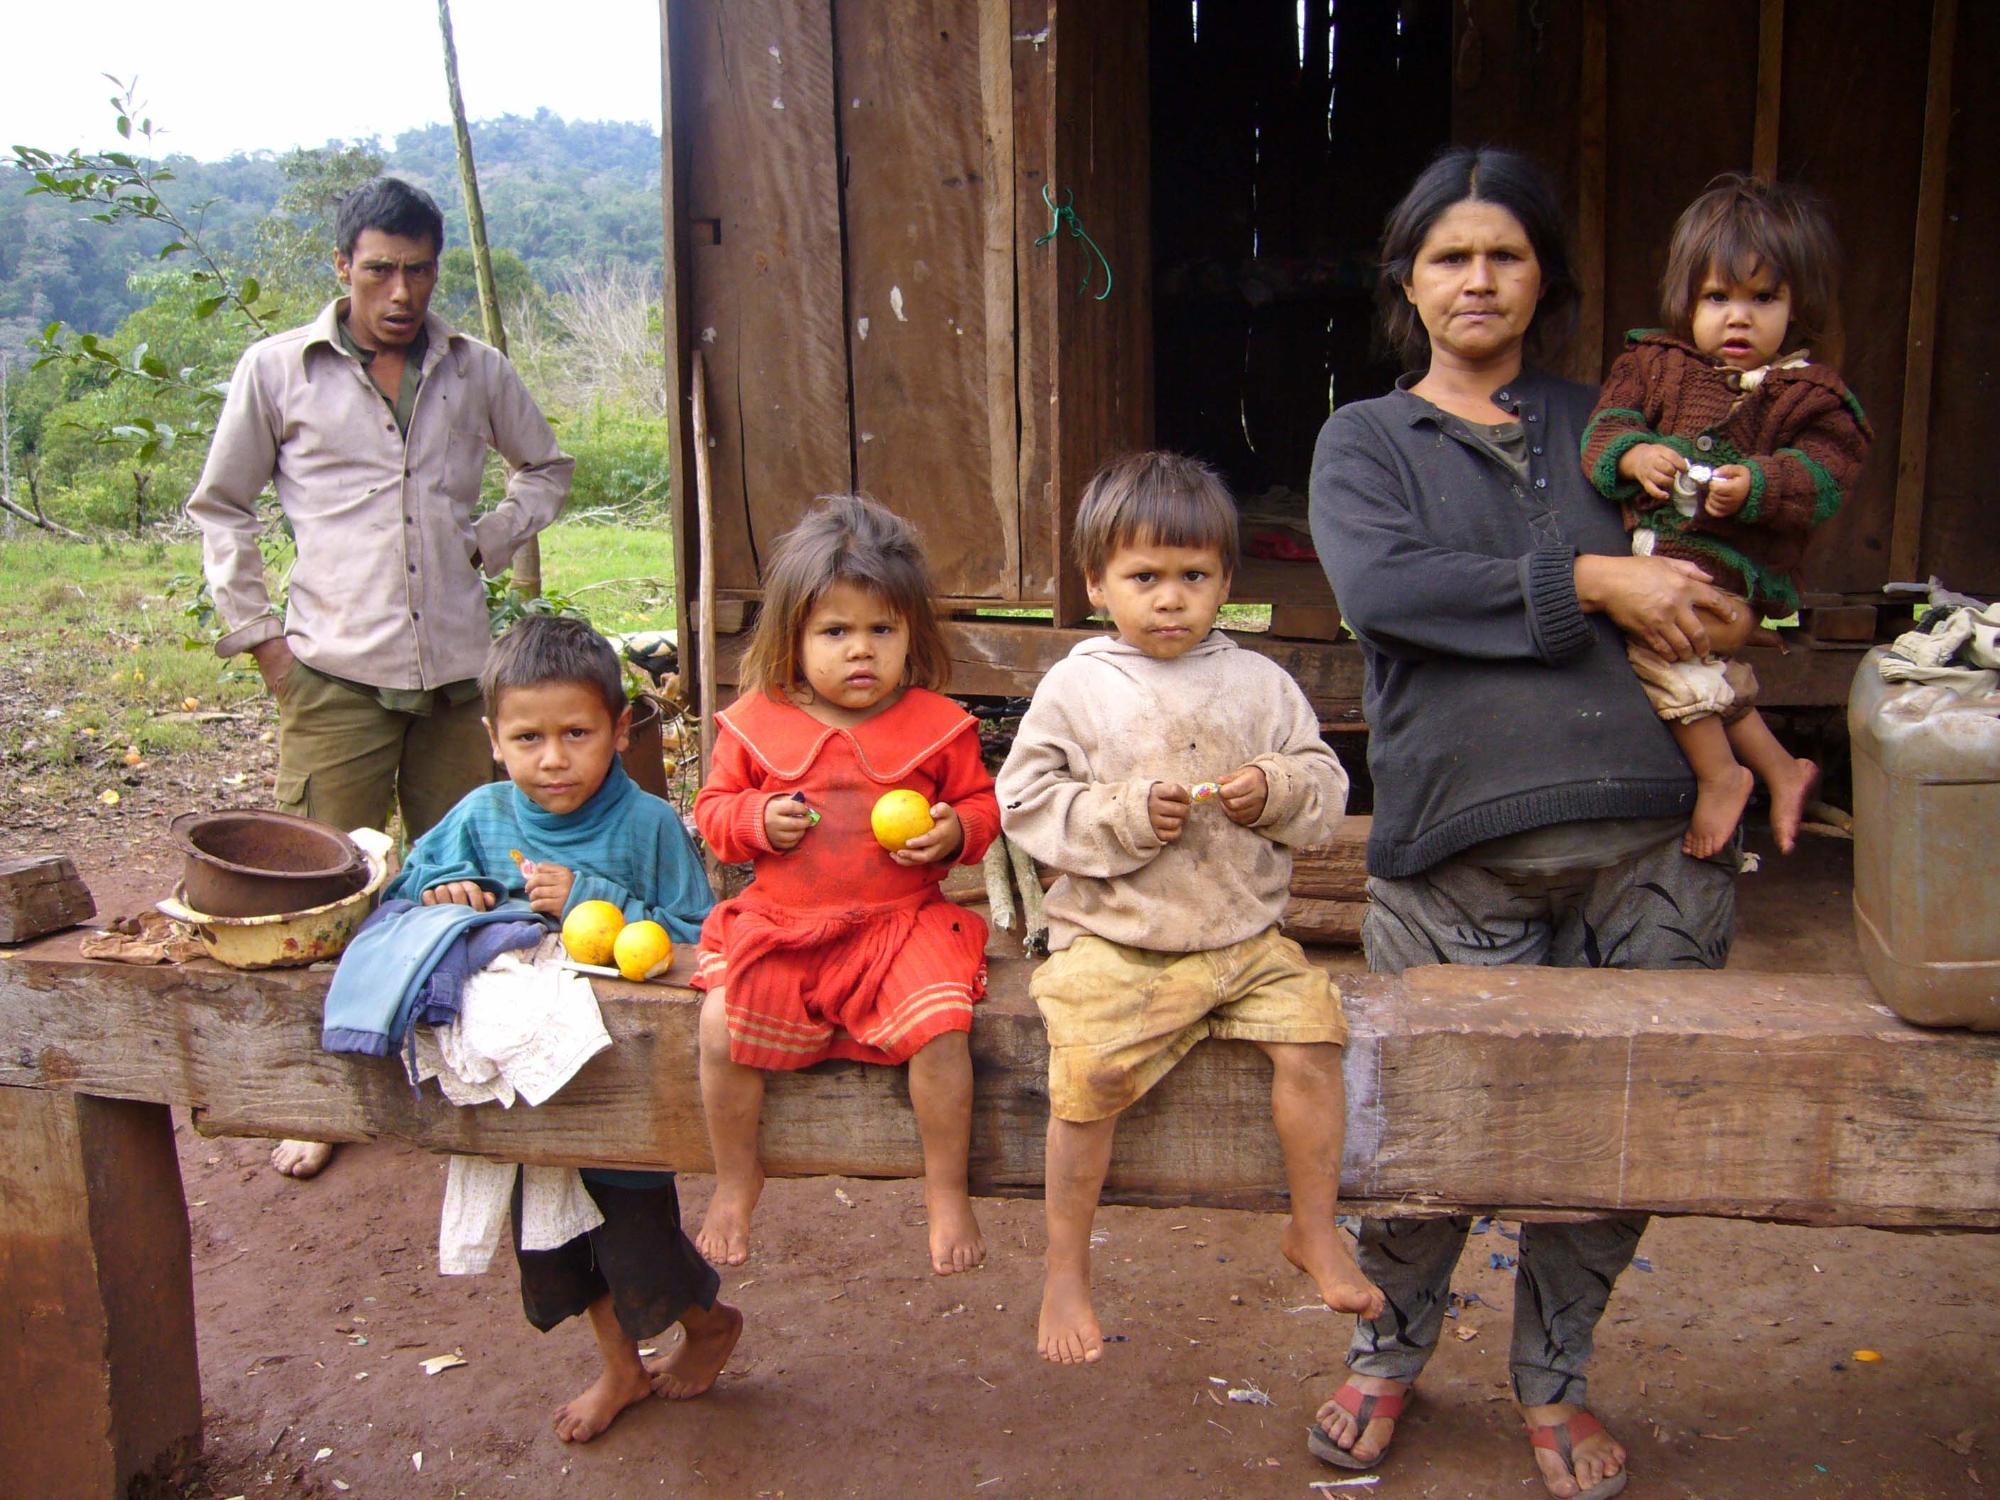 Familie in der argentinischen Provinz Misiones.